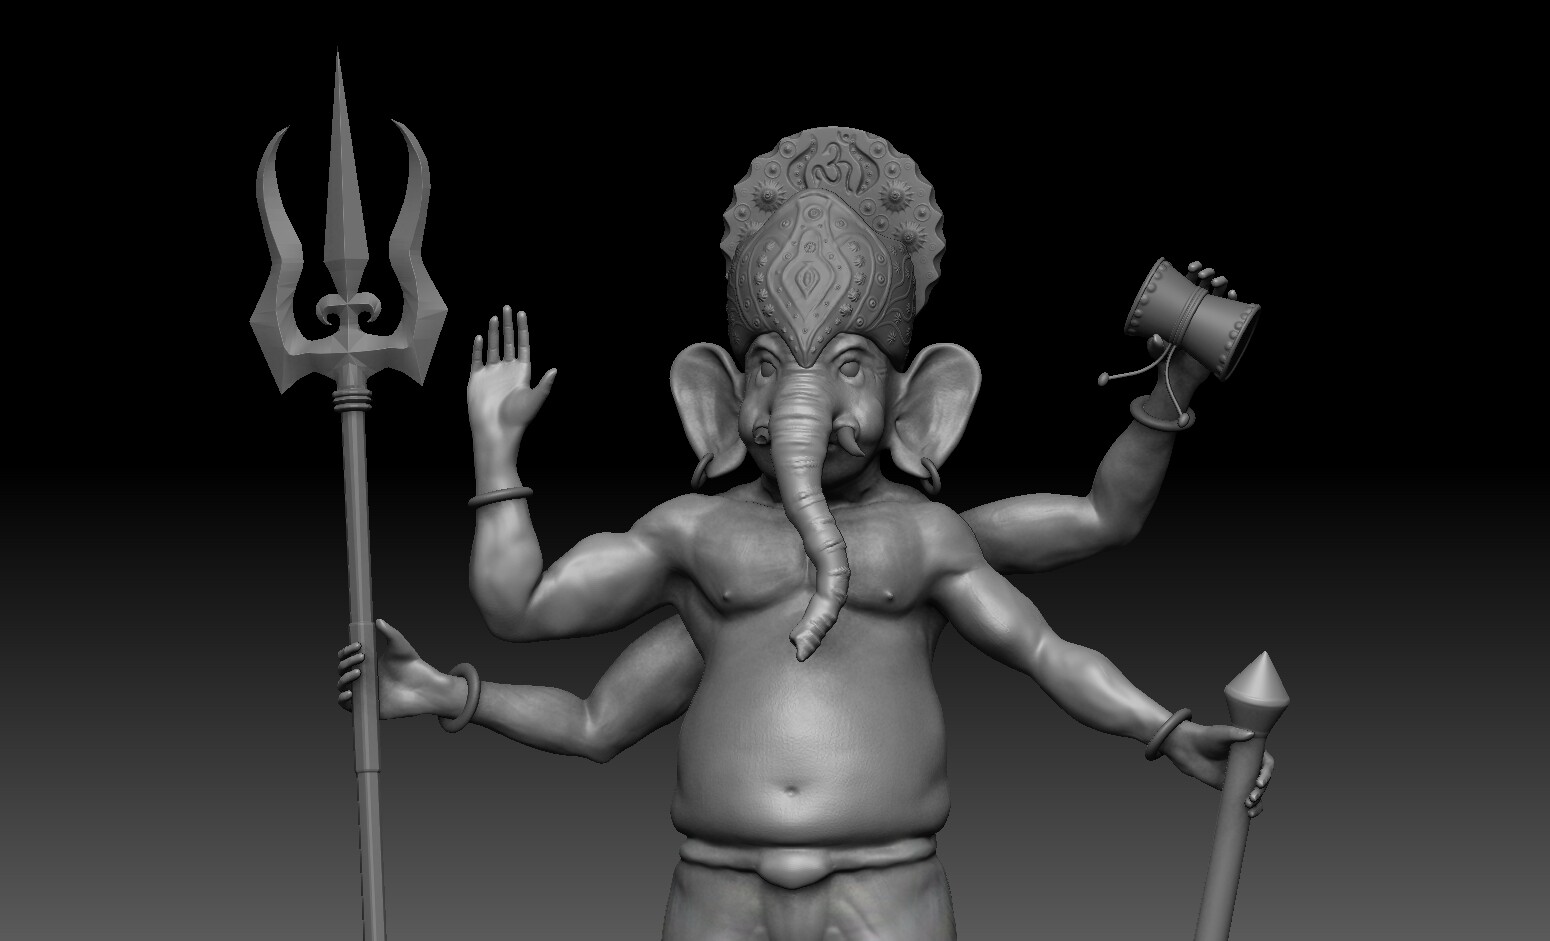 ArtStation - Lord Ganesh's Rudra Avatar